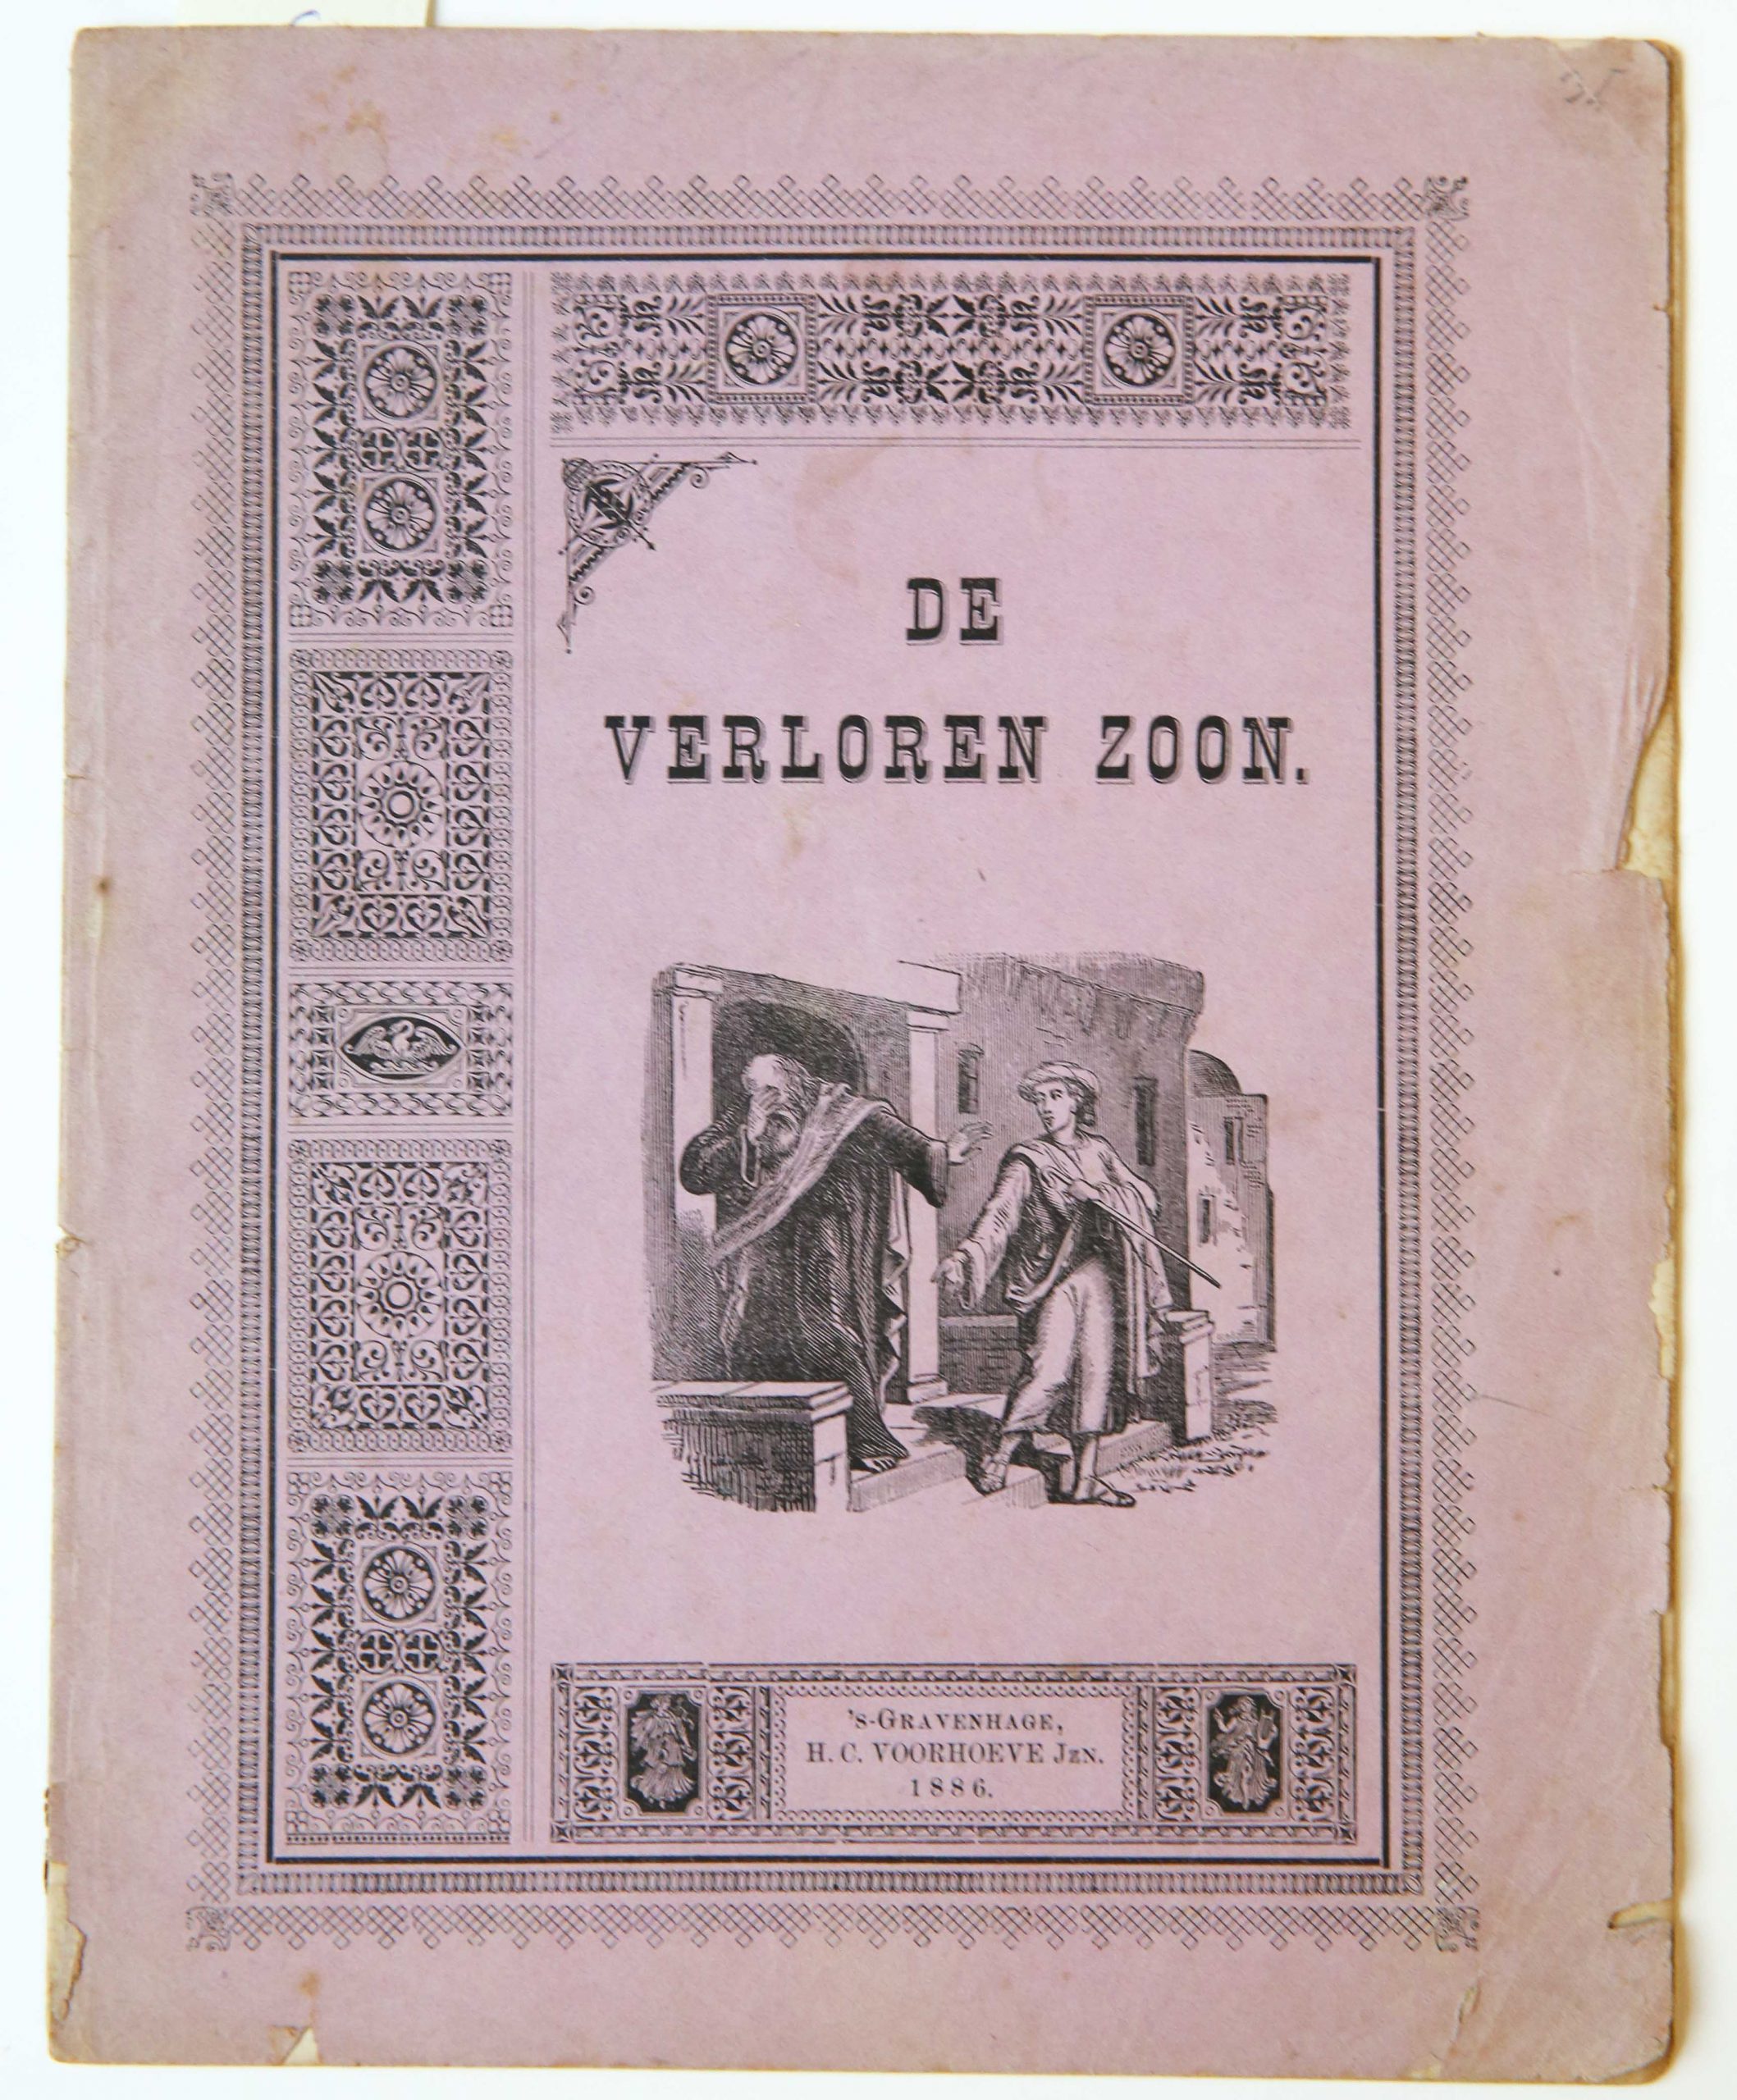 De verloren zoon, 's-Gravenhage, H.C. Voorhoeve Jzn 1886, 8 pp.